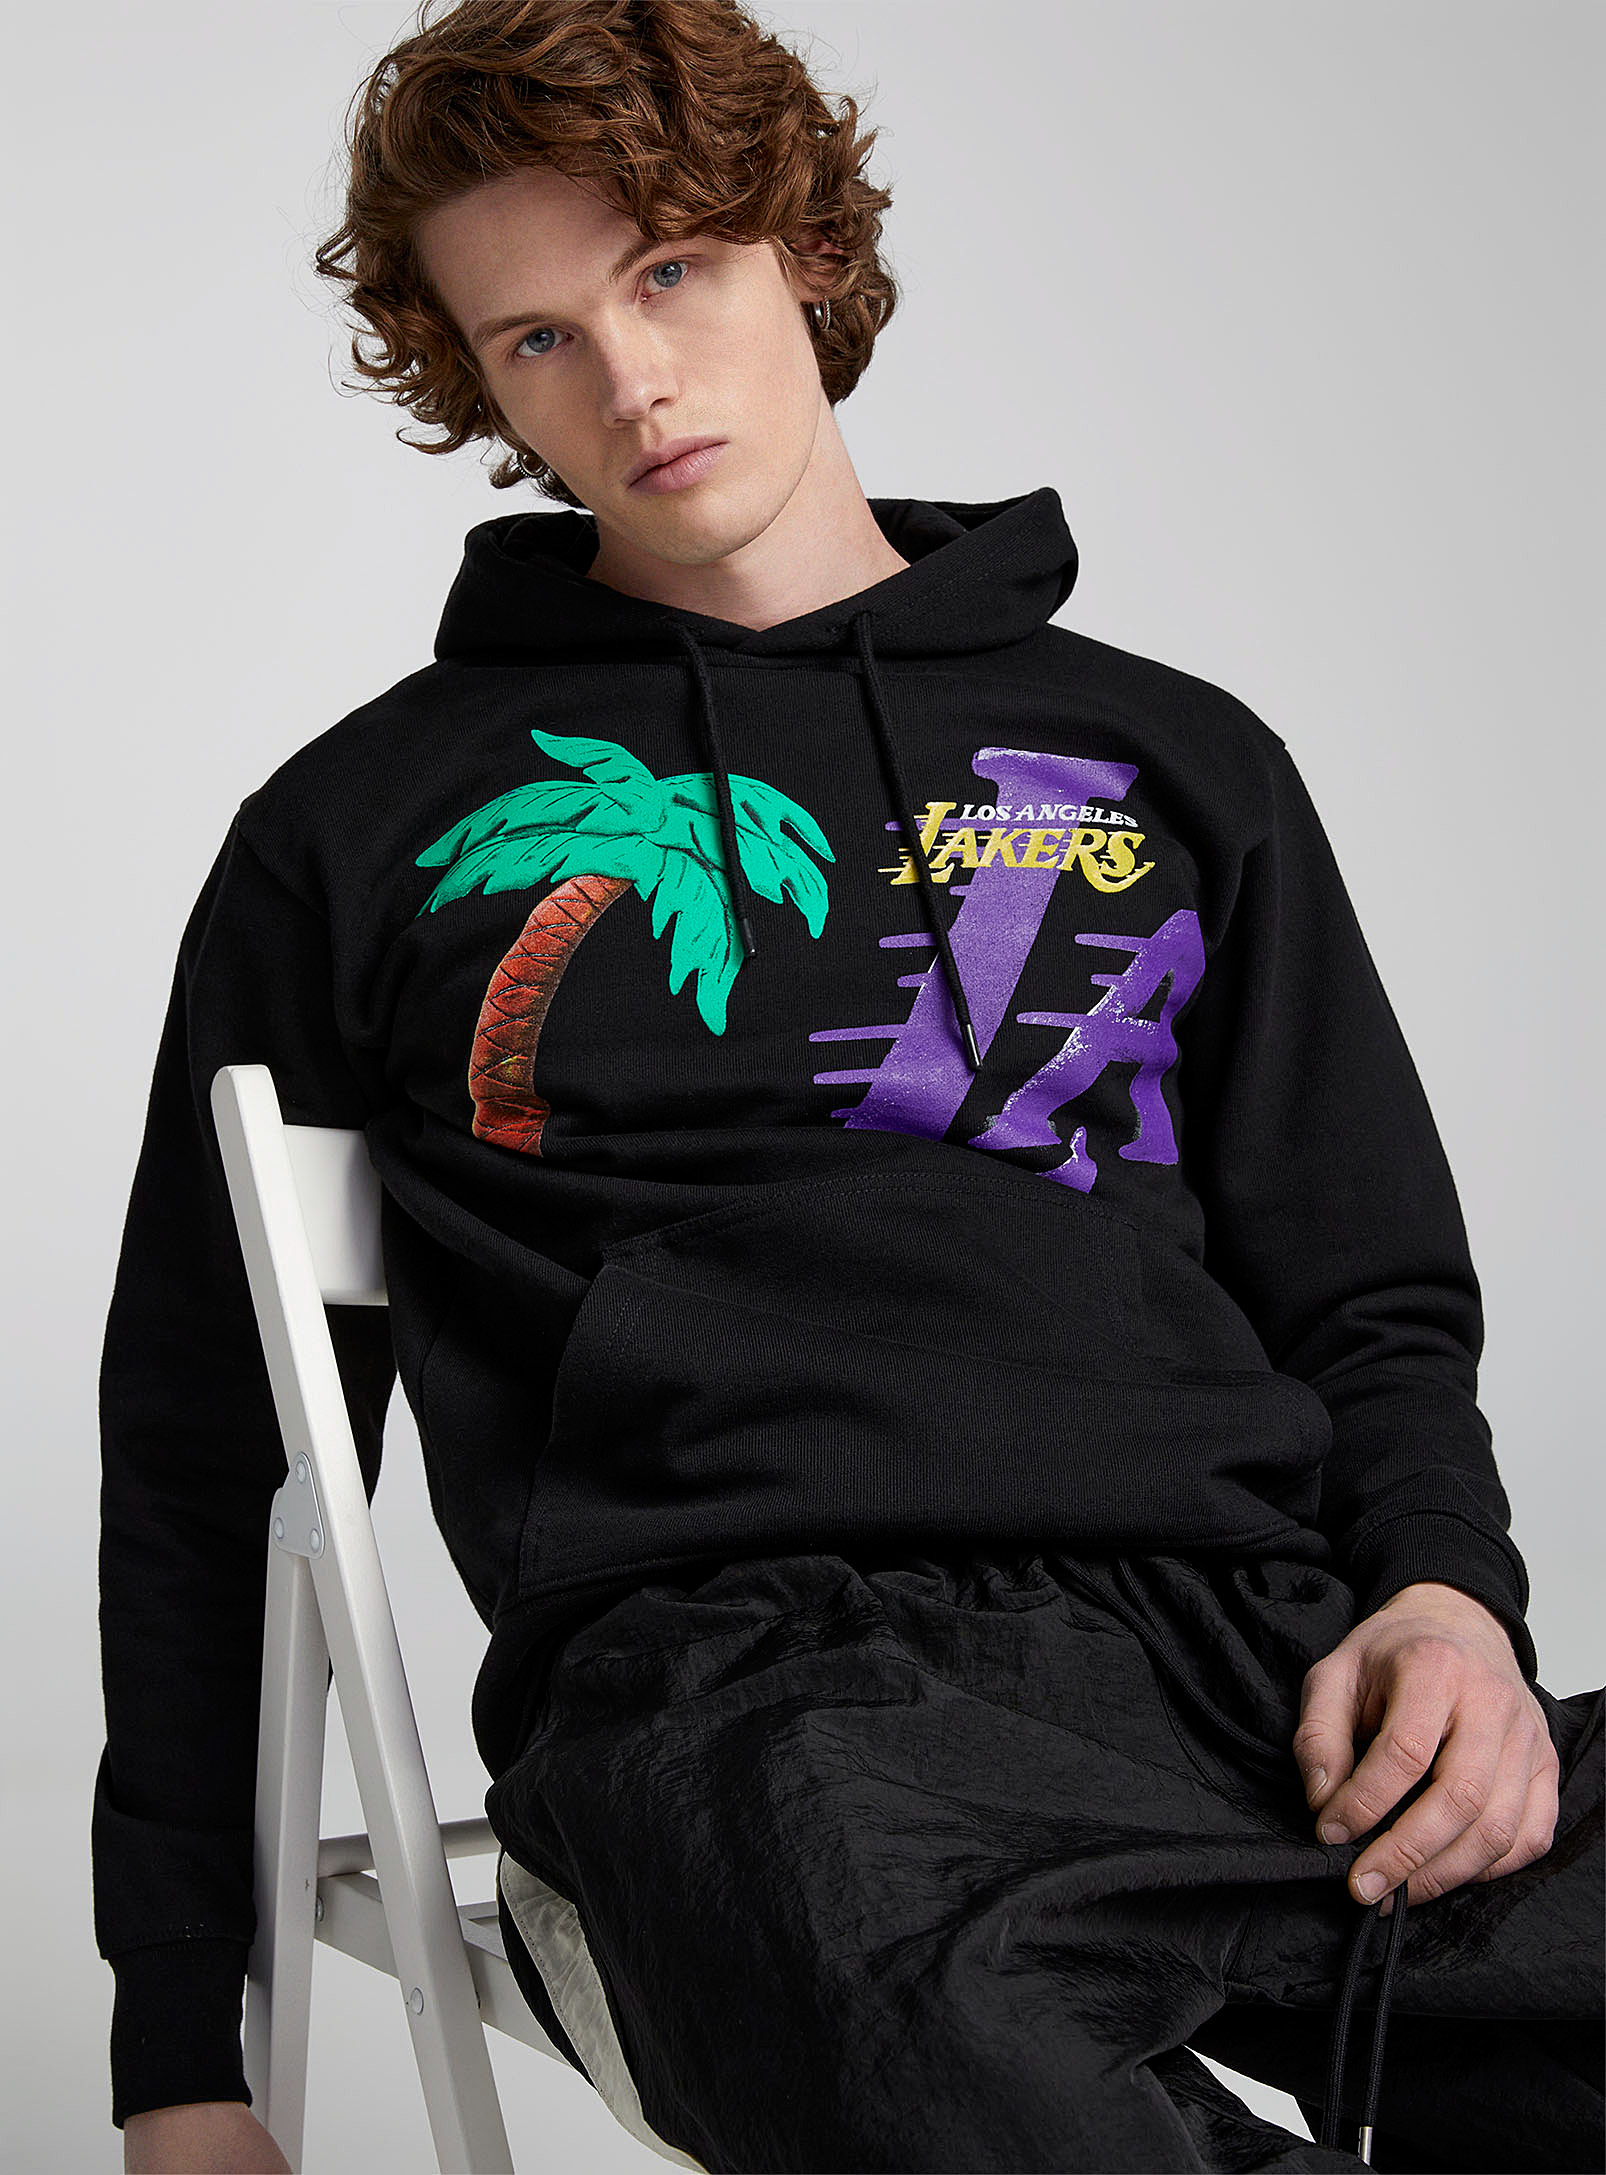 Market - Men's Lakers hoodie